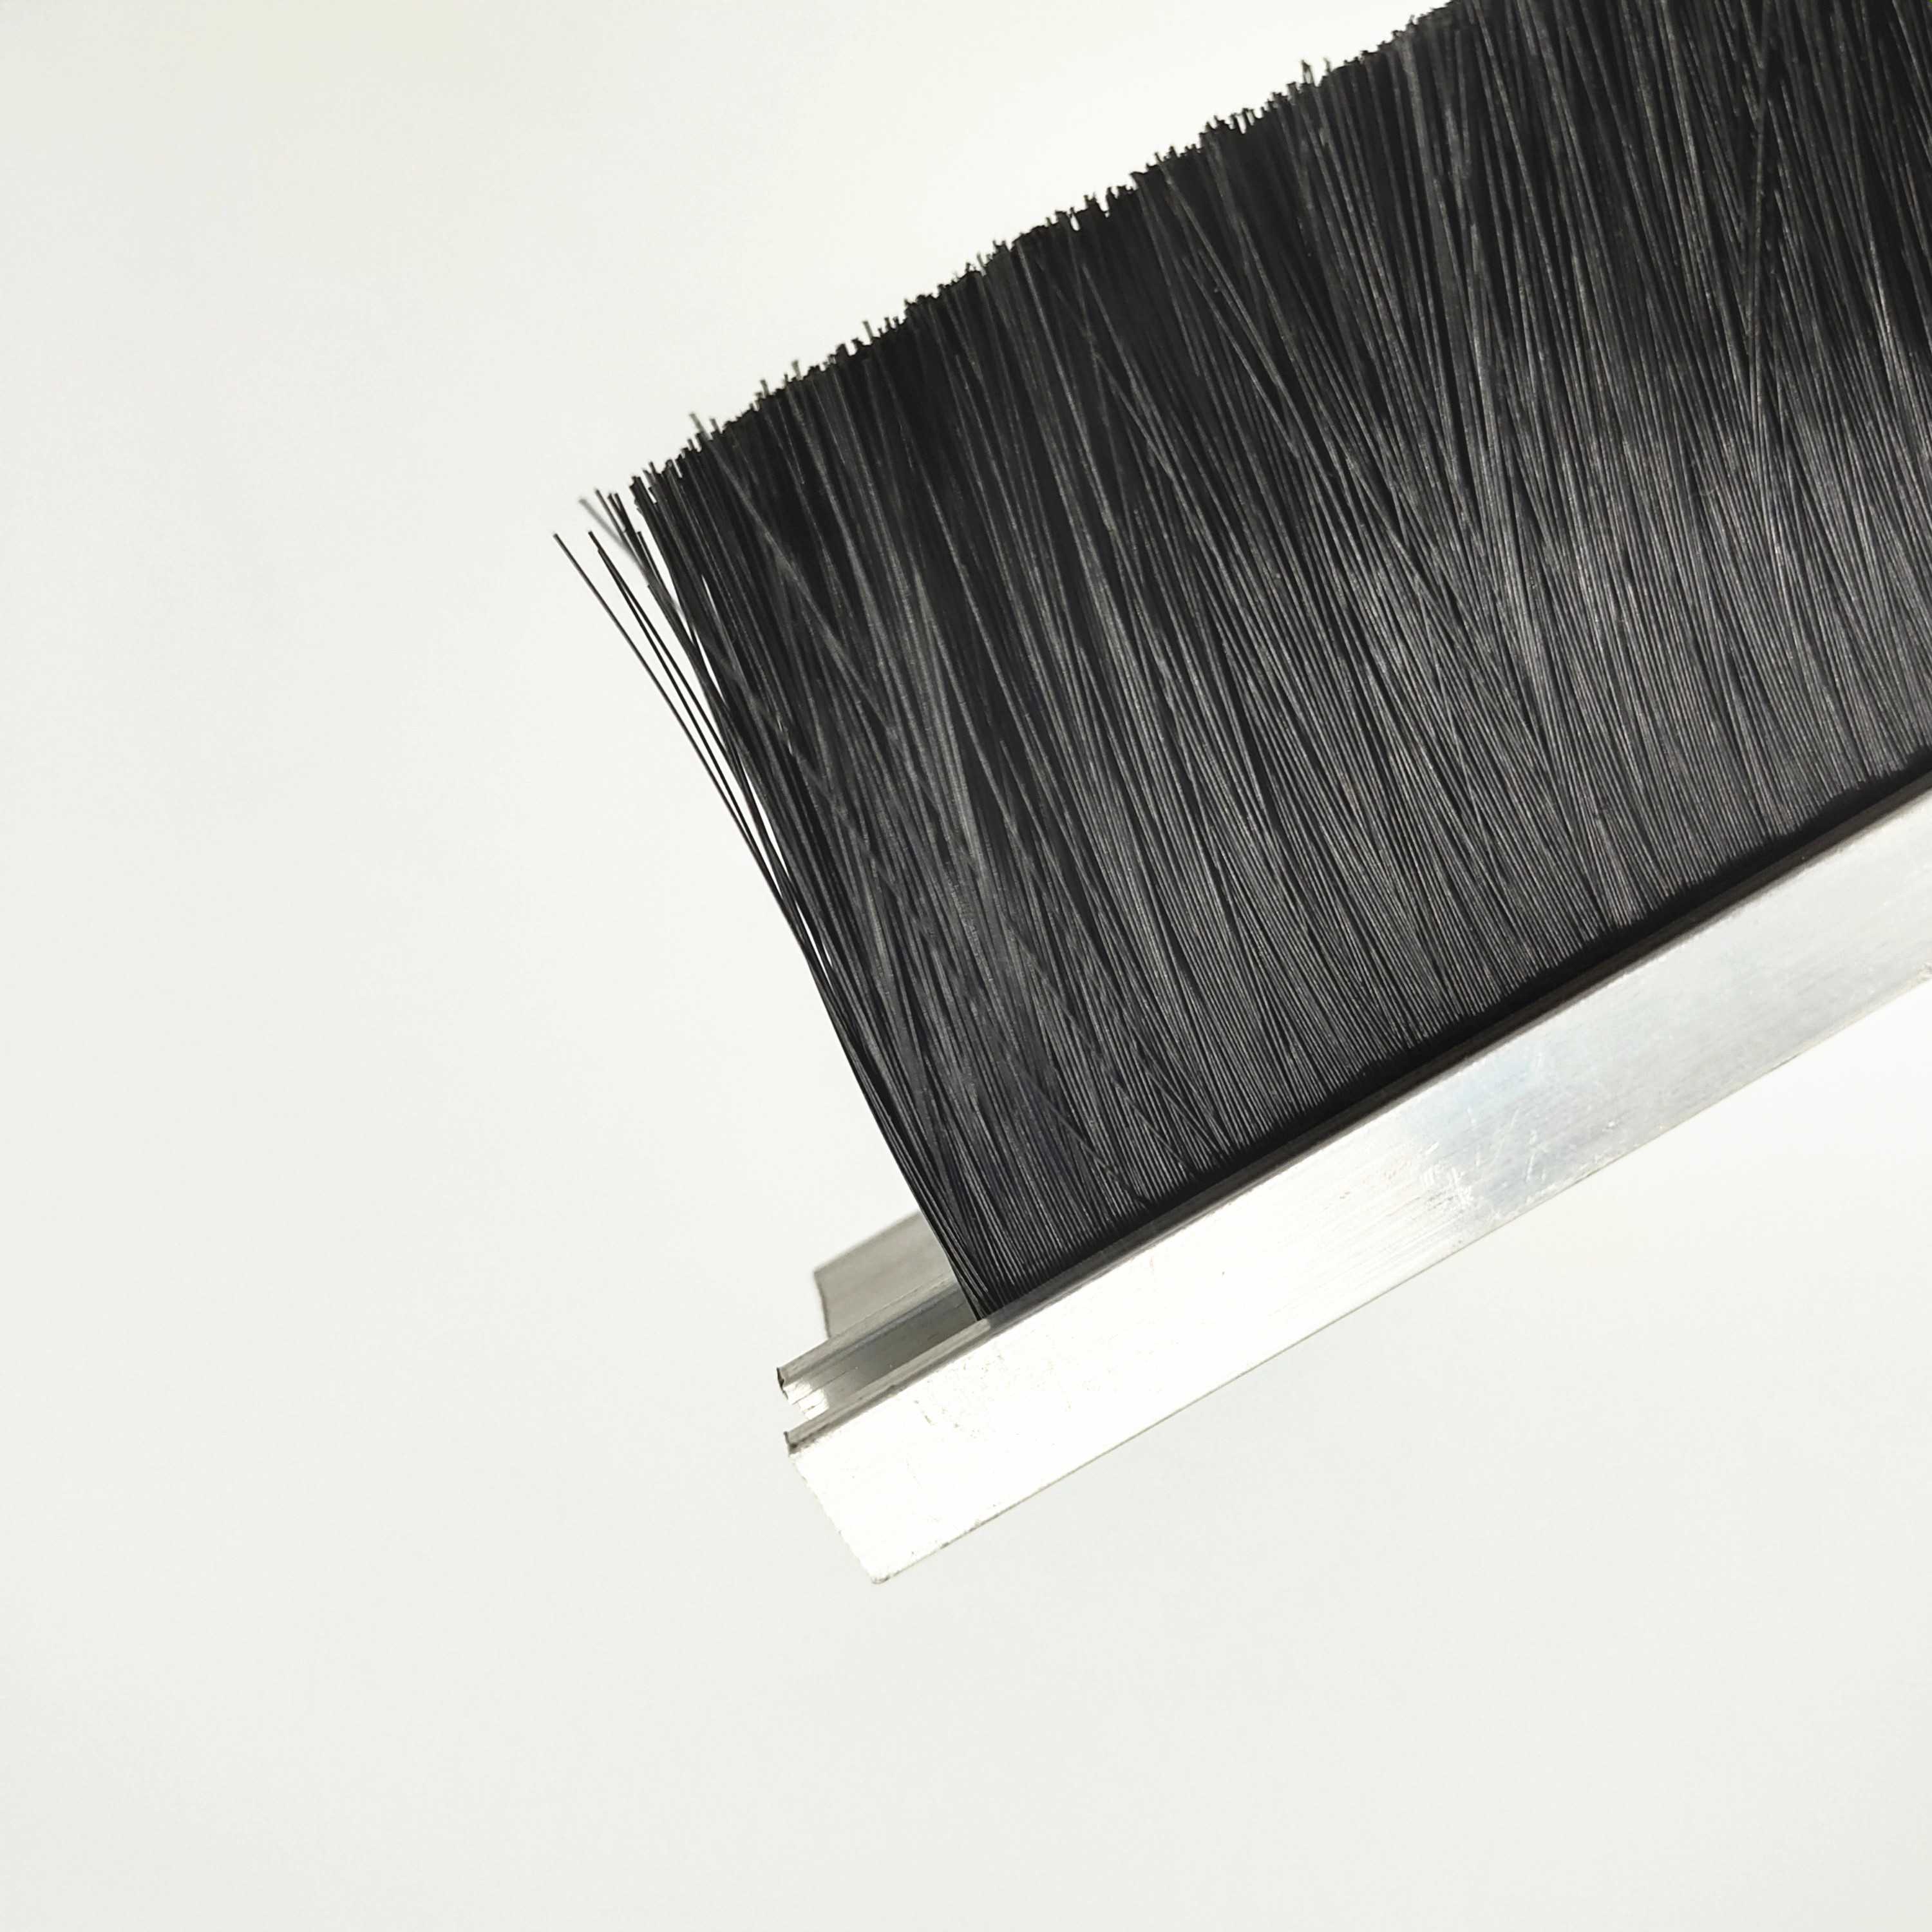 RS PRO, RS PRO Black Aluminium, Nylon Brush Strip, 150mm